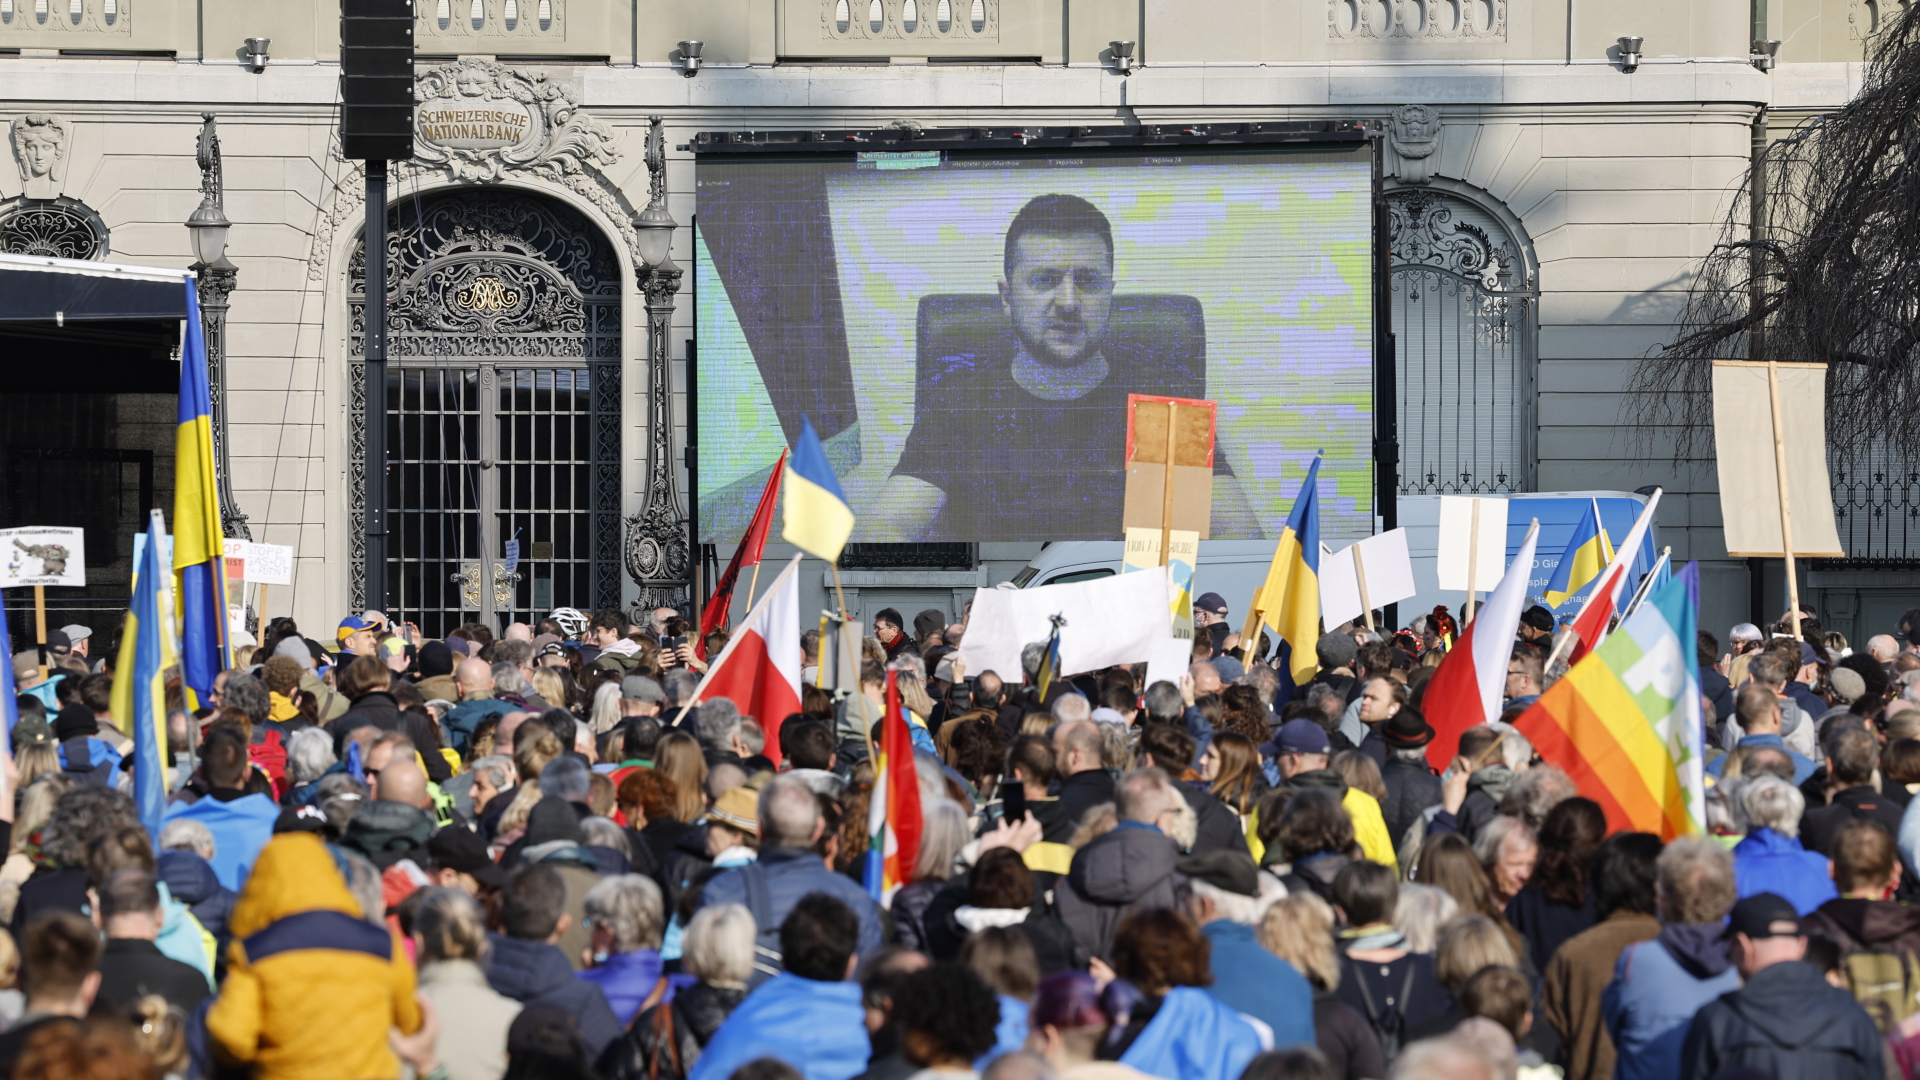 Der ukrainische Präsident Selenskyj auf einer großen Leinwand bei einer Demonstration in der Schweizer Hauptstadt Bern zugeschaltet. | EPA